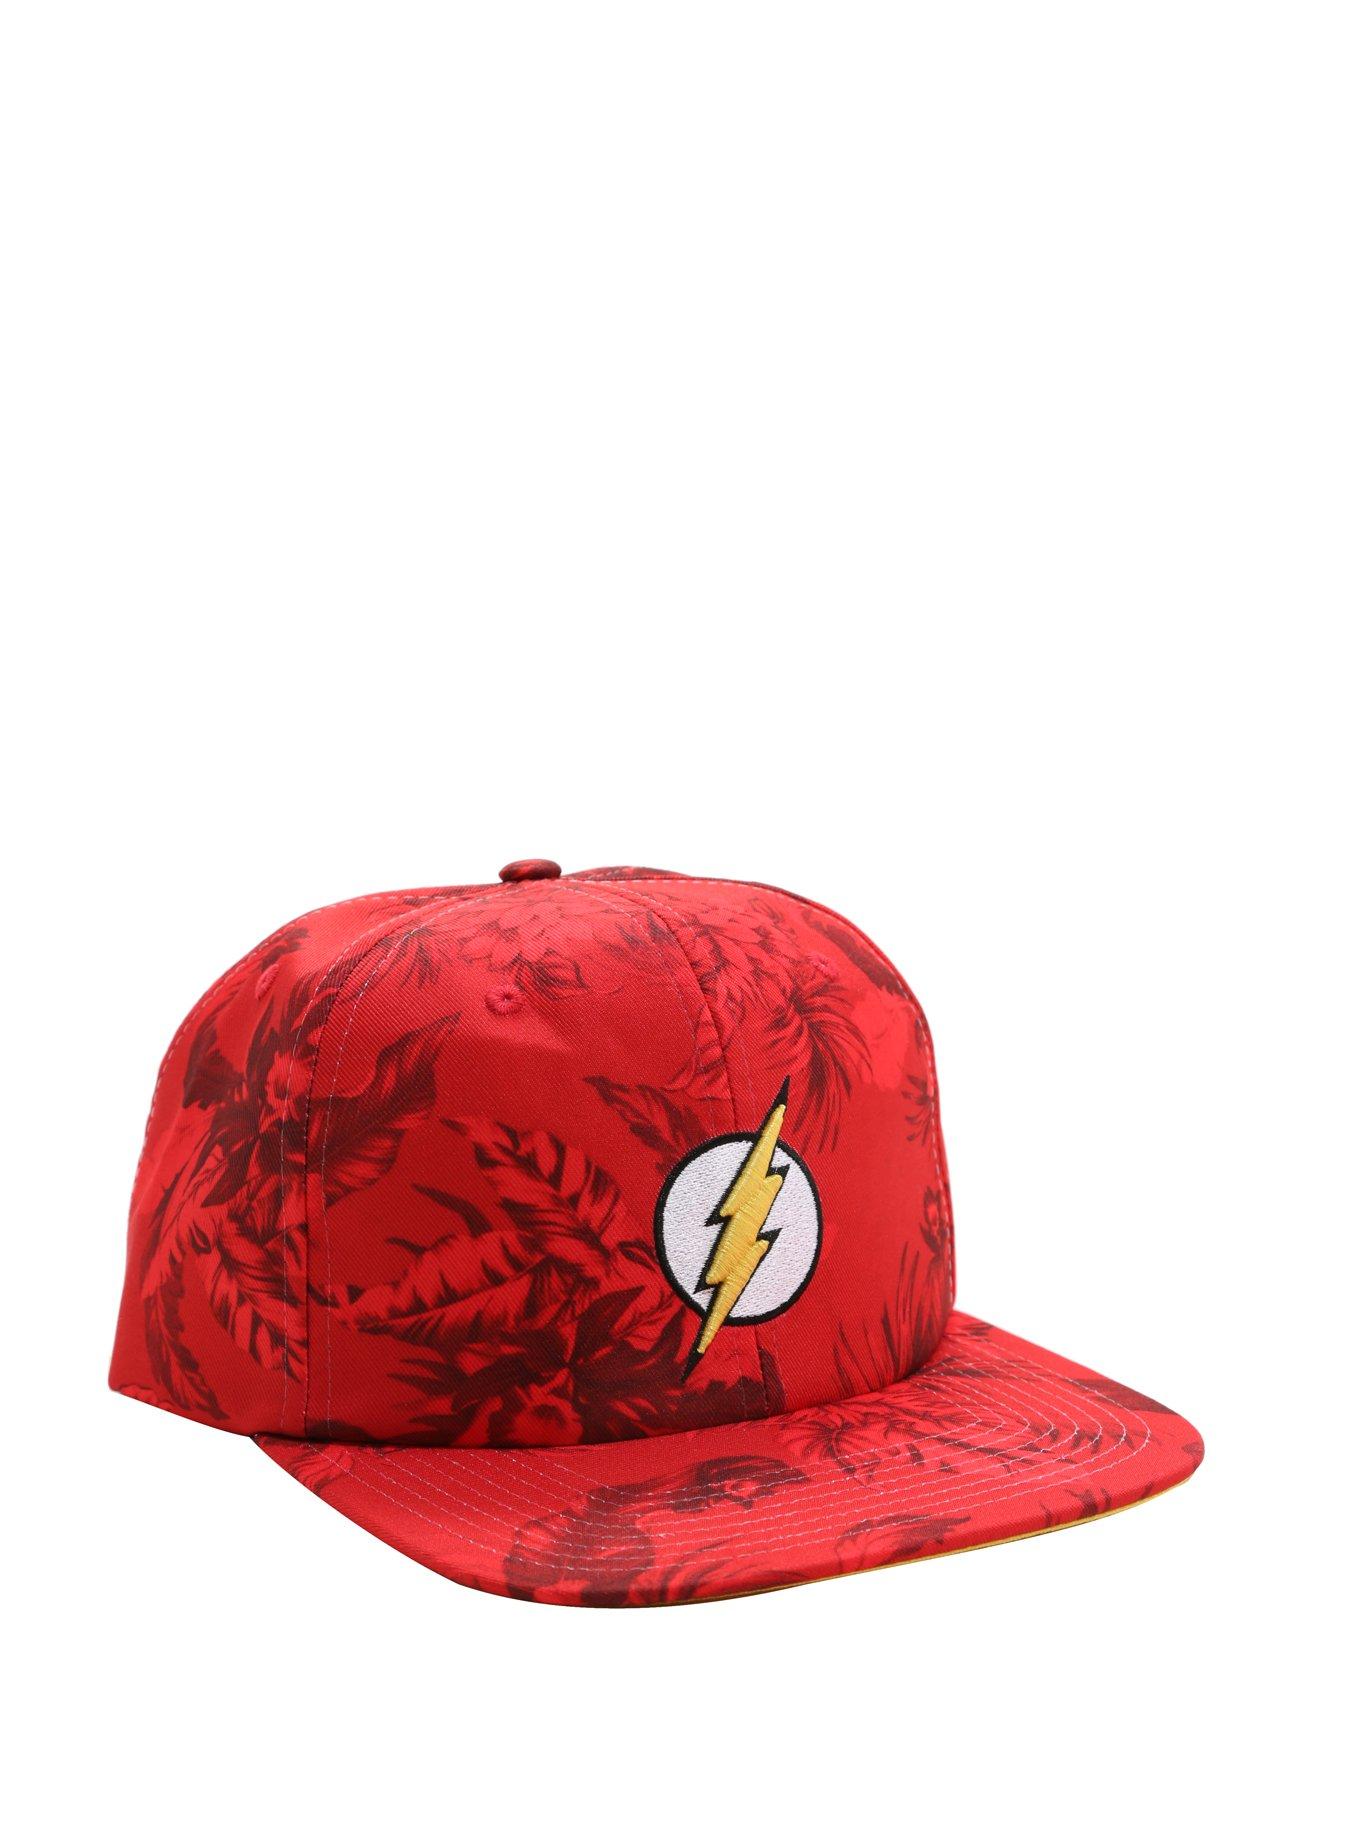 DC Comics The Flash Floral Snapback Hat, , hi-res